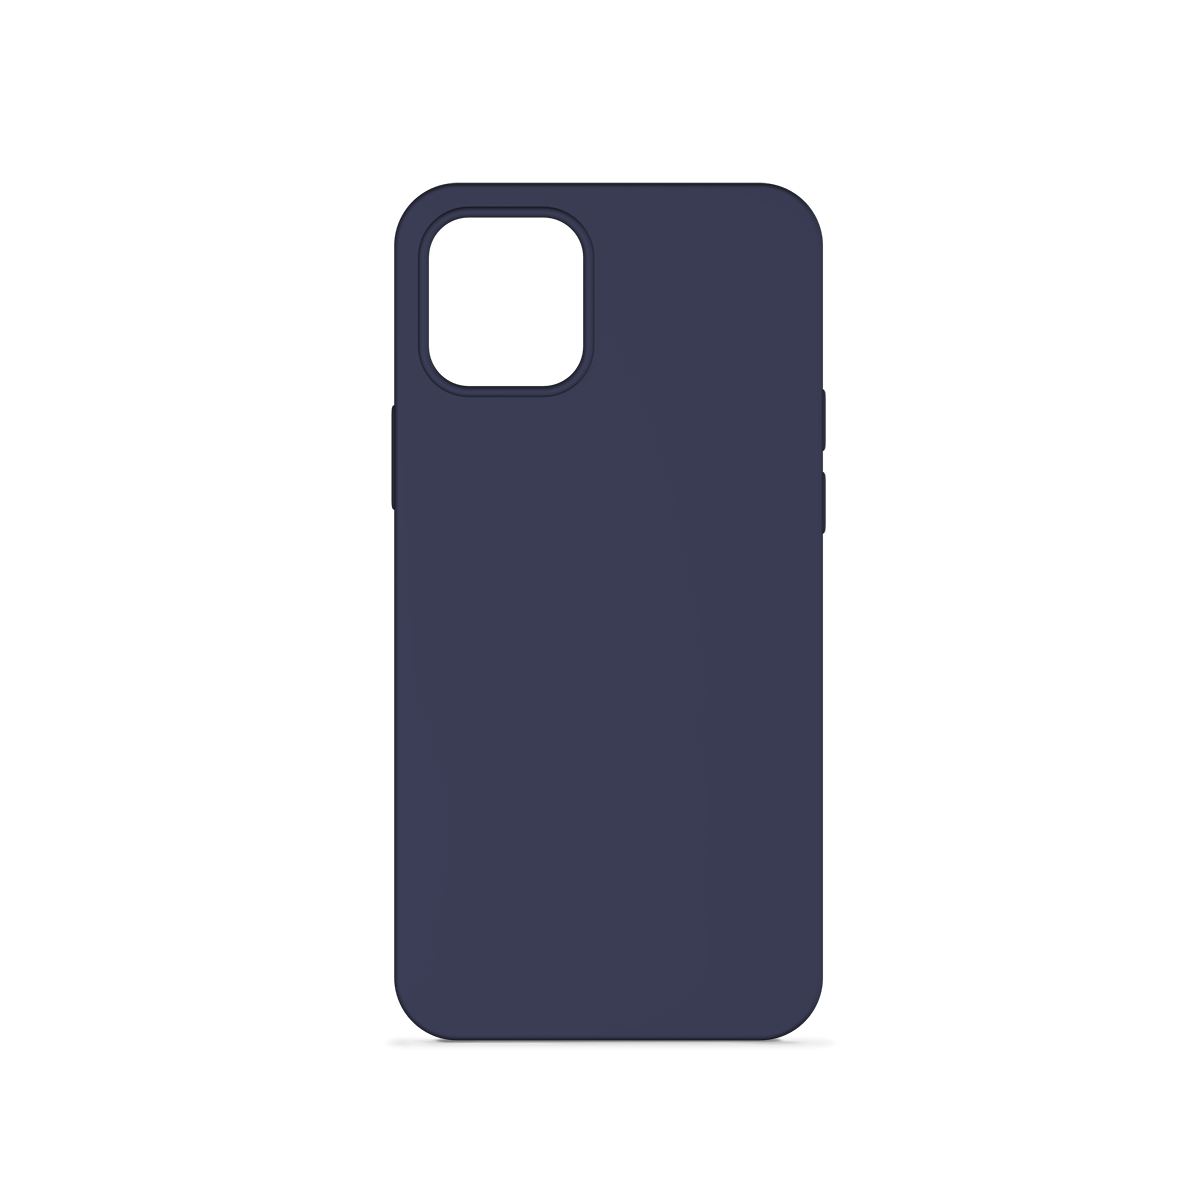 Epico Silicone Case for iPhone 12 mini - dark blue